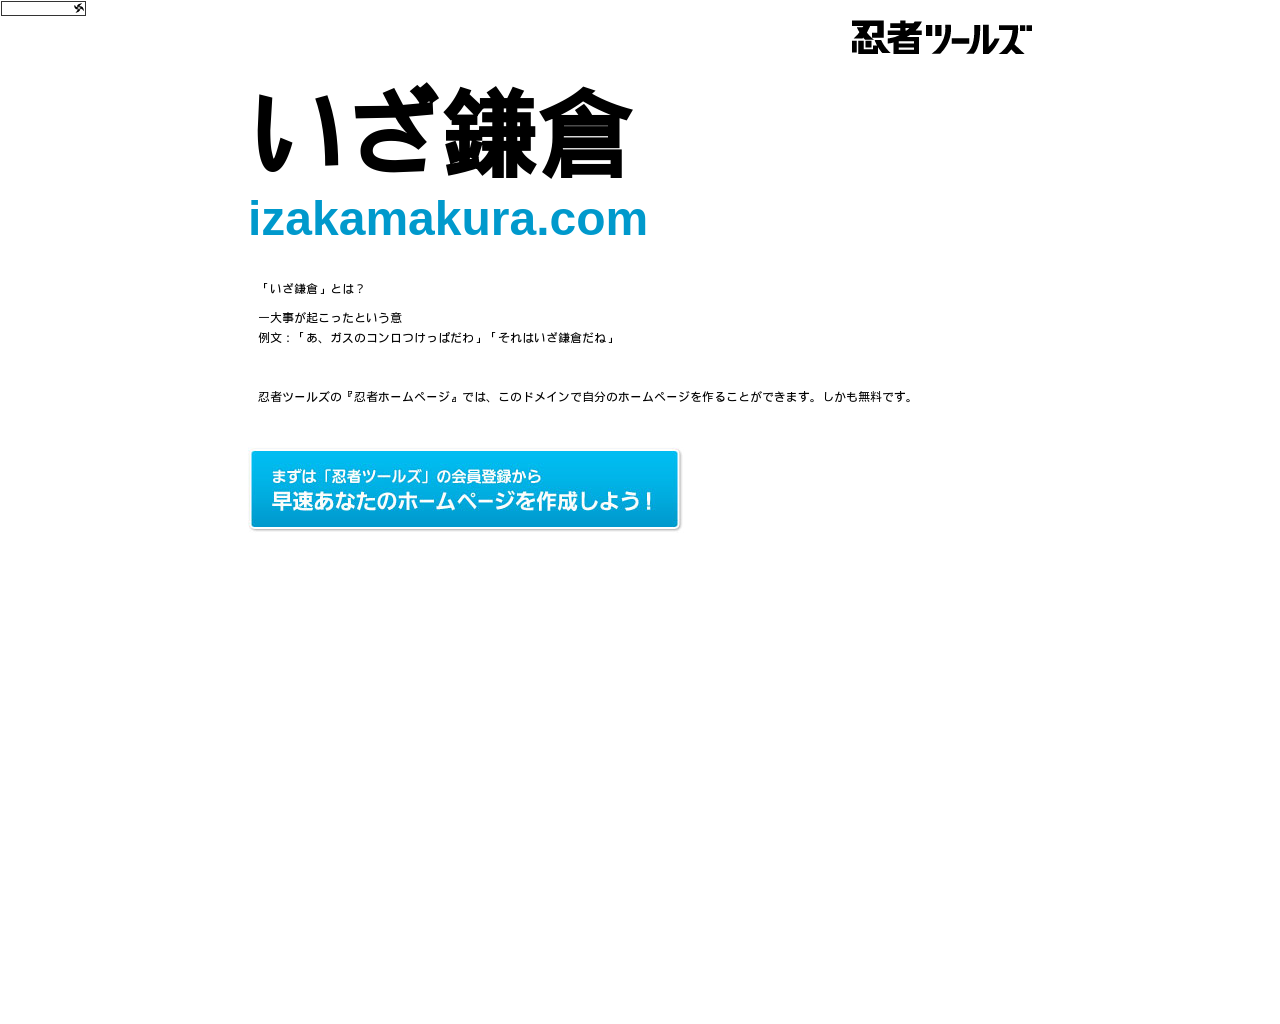 izakamakura.com